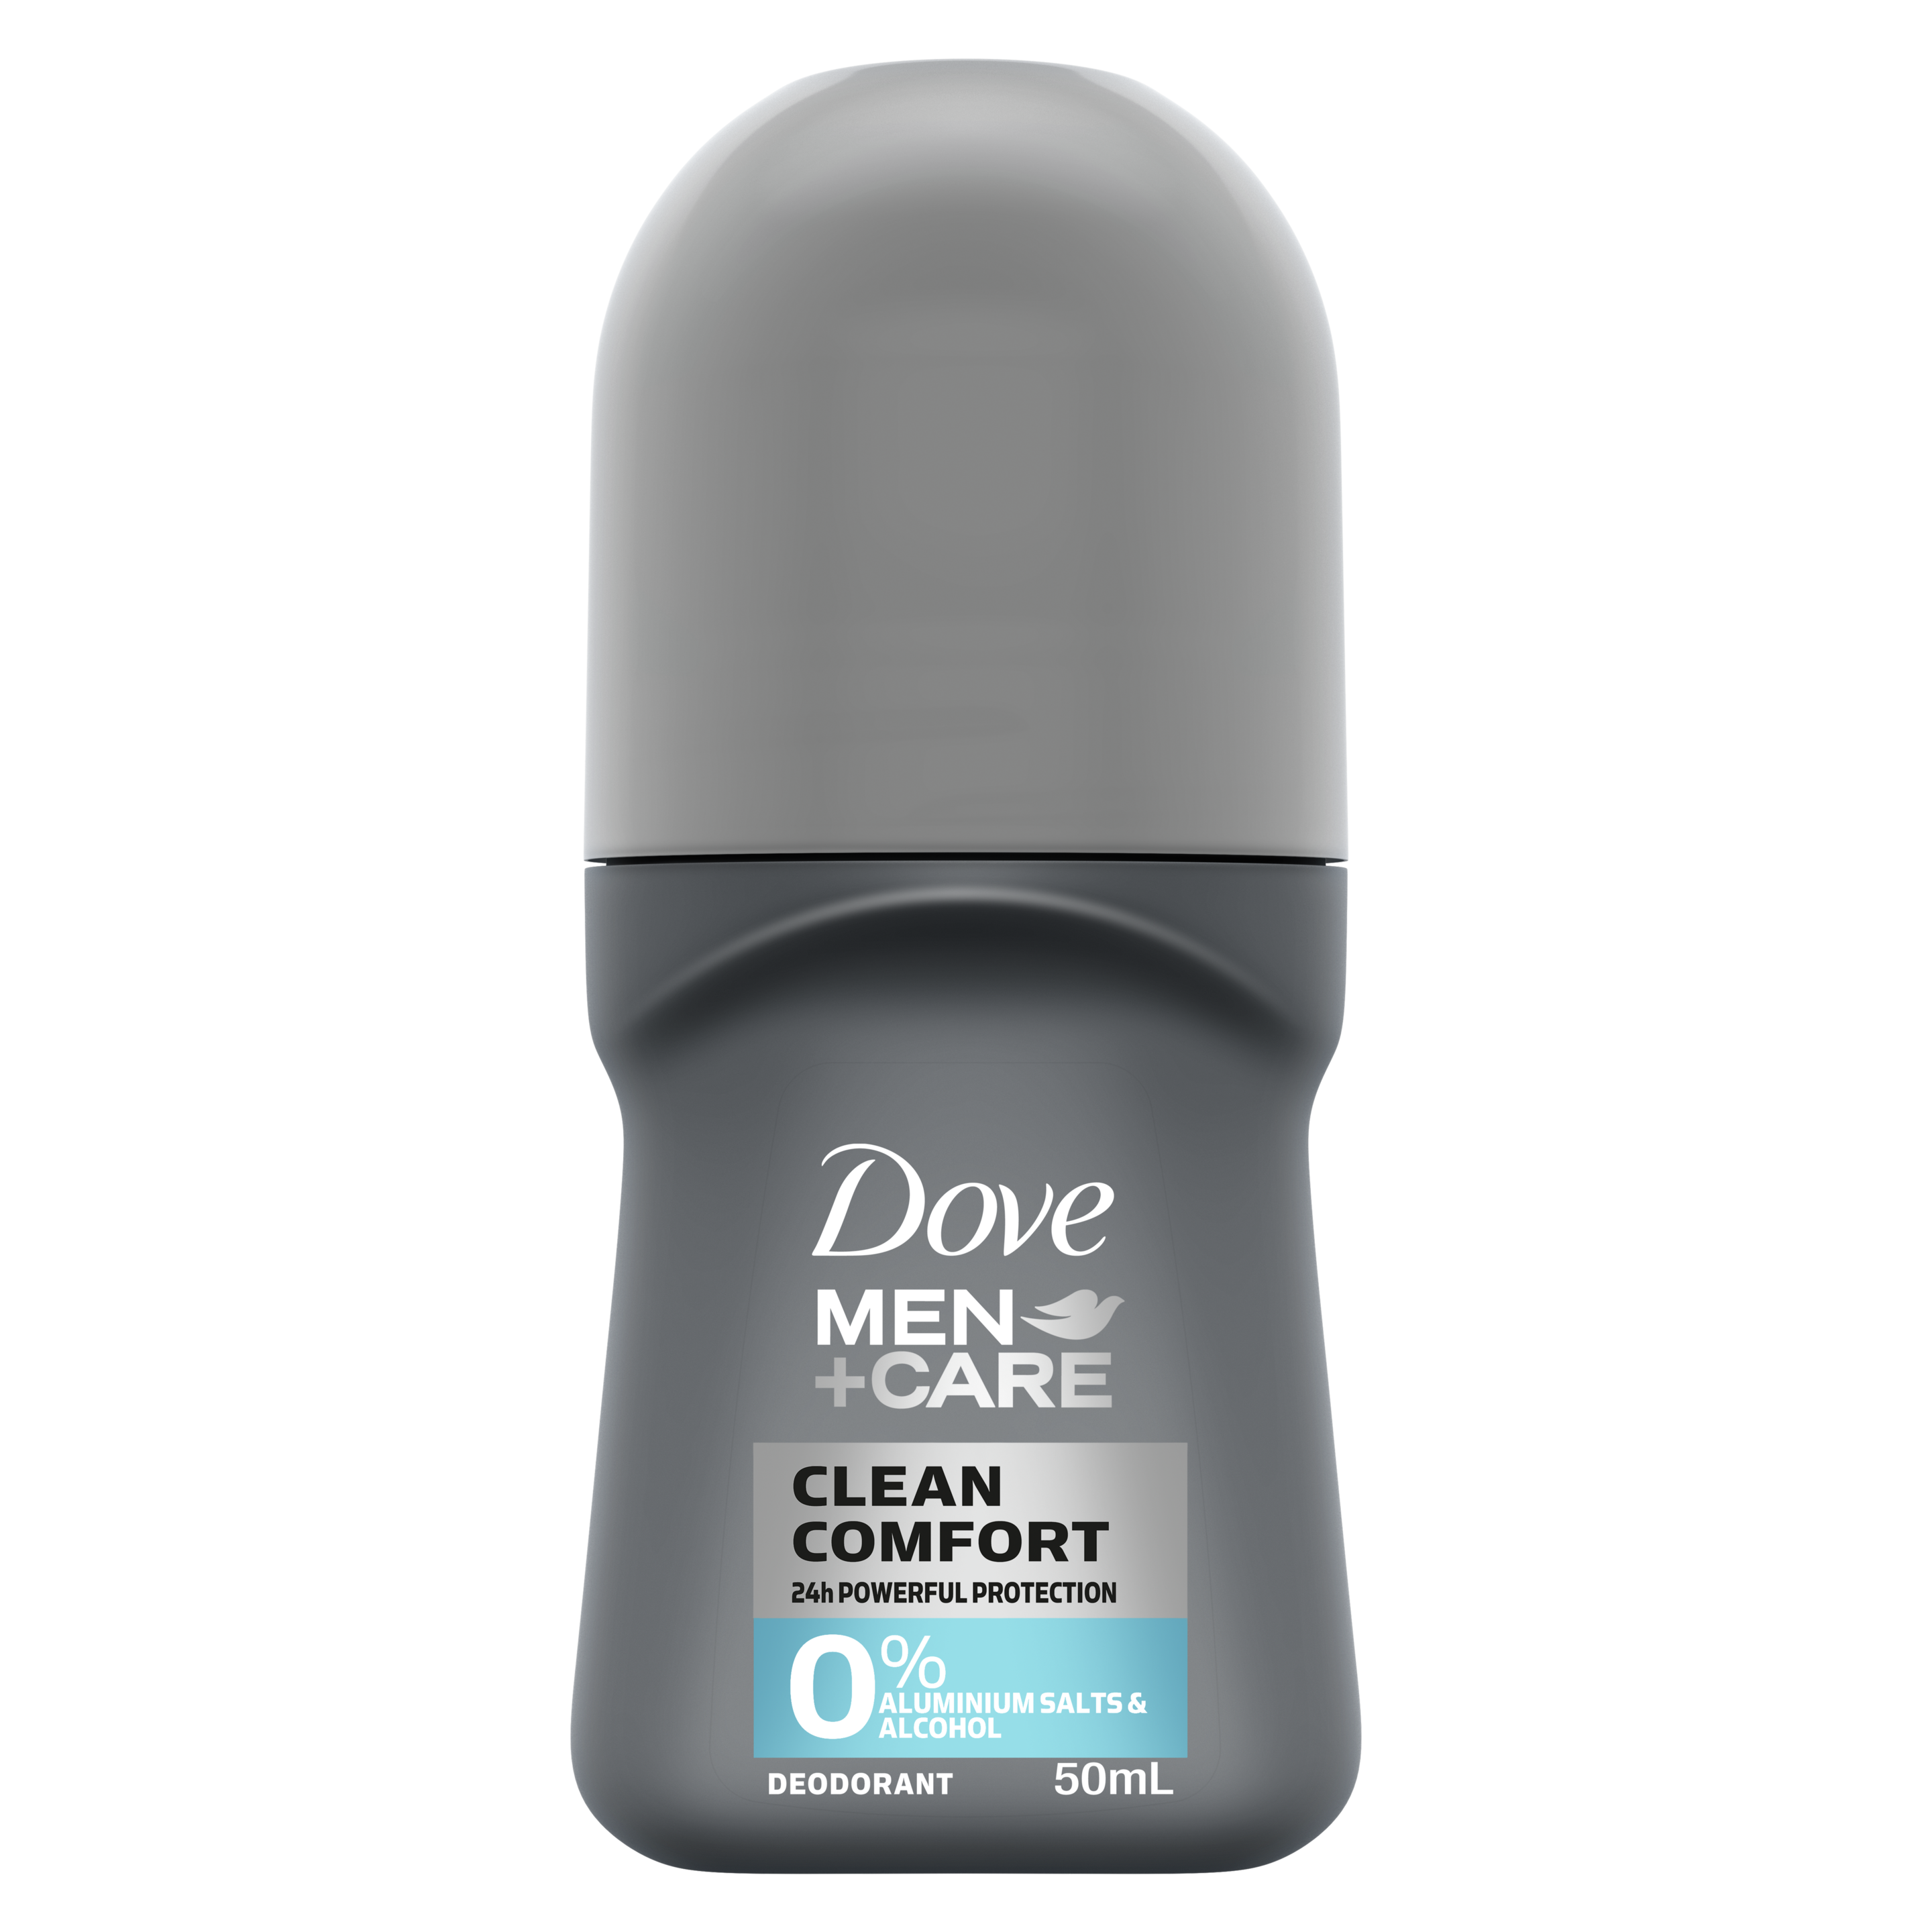 Dove Men+Care 0% Aluminium Roll On Deodorant Clean Comfort 50mL